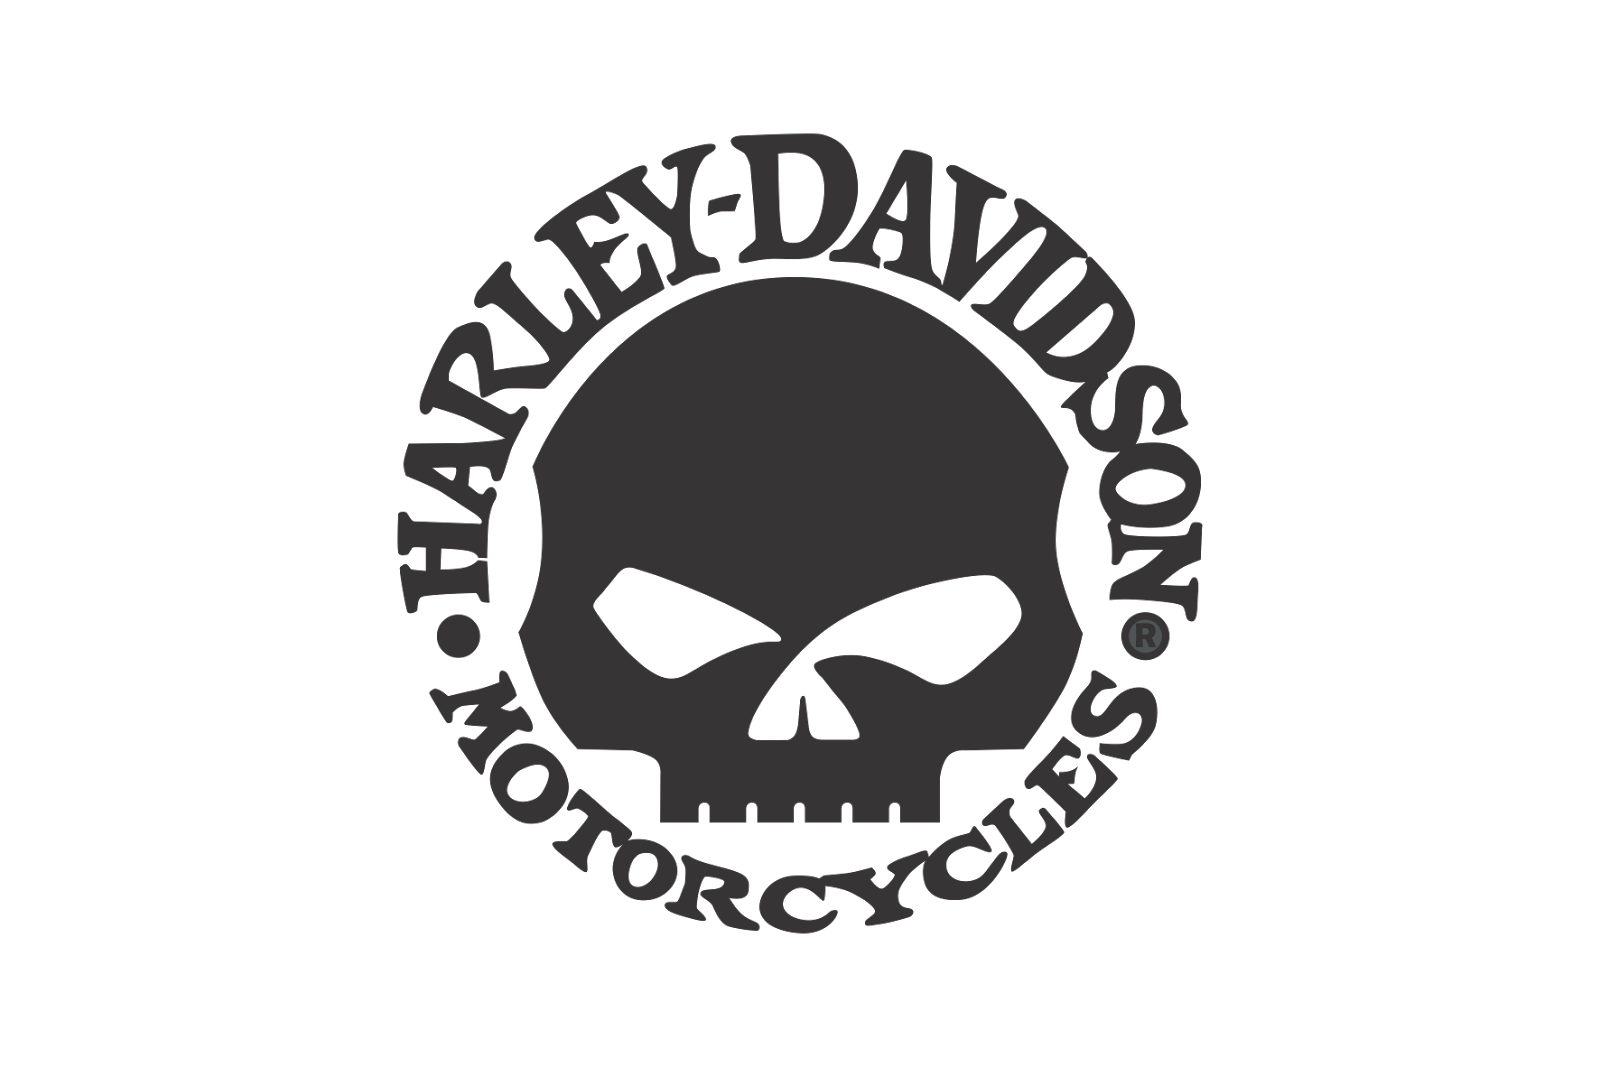 Logo+Harley_Davidson_Skull.png